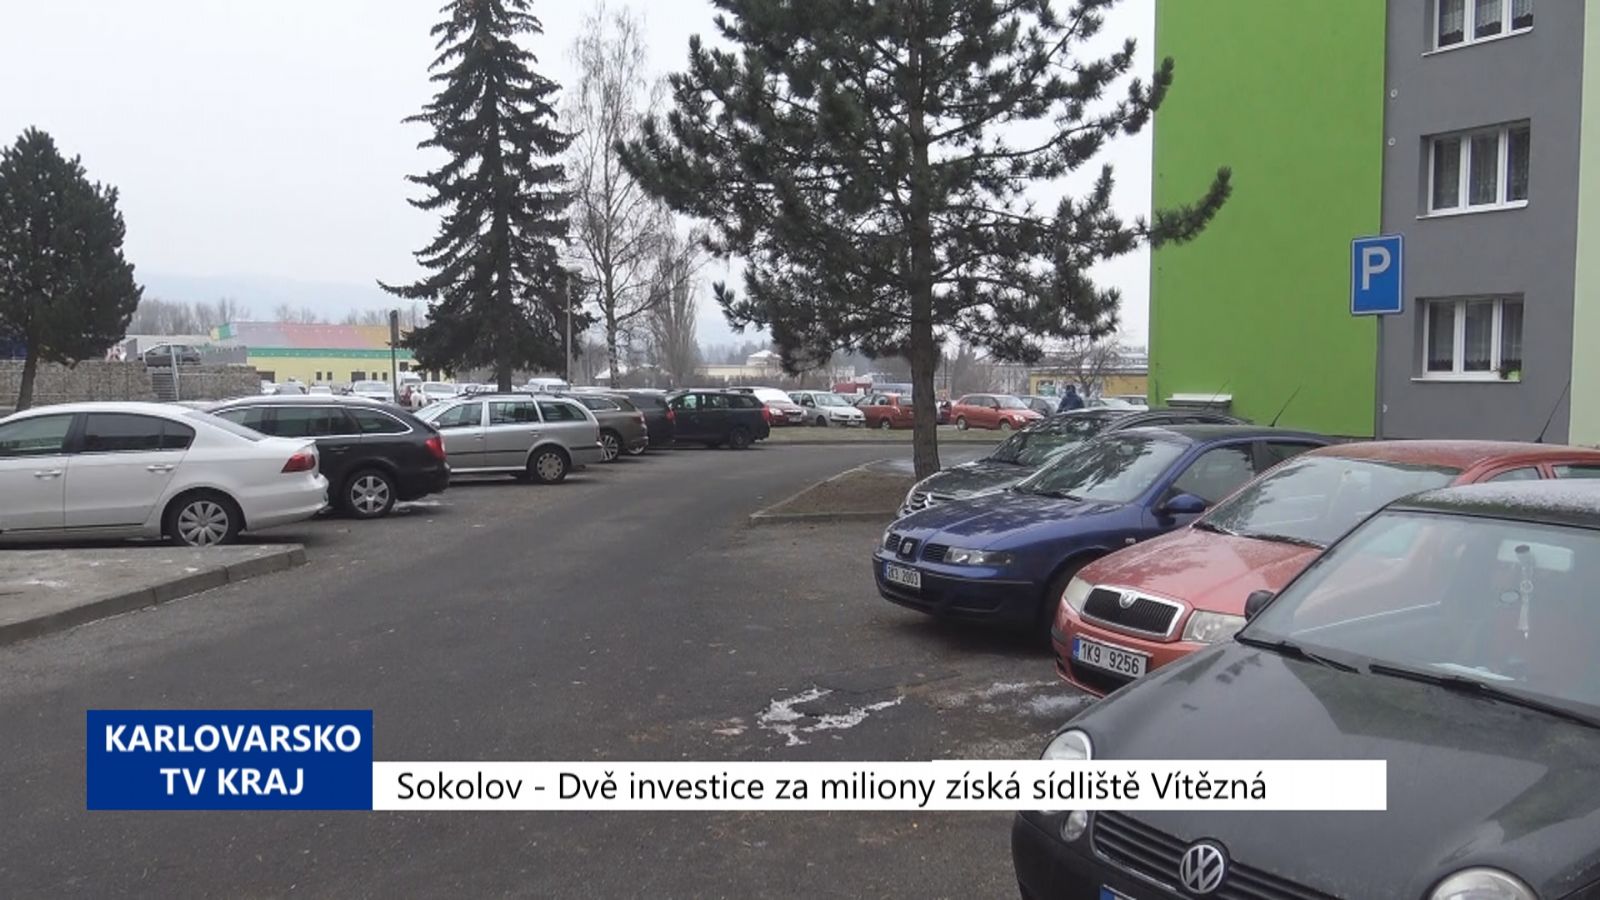 Sokolov: Dvě investice za miliony získá sídliště Vítězná (TV Západ)